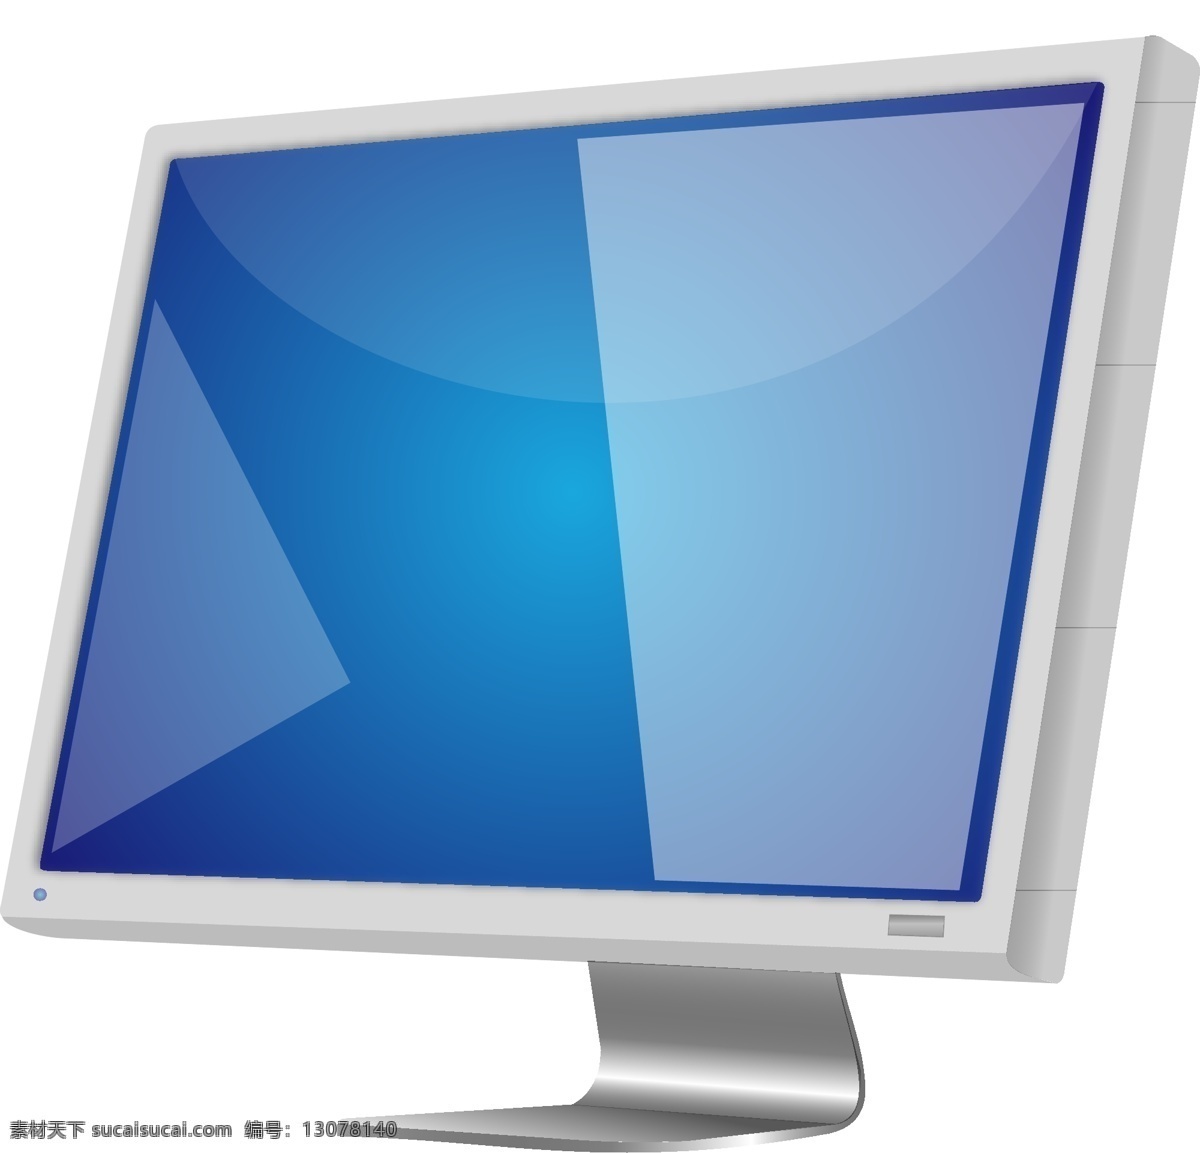 液晶屏 矢量 监视器 显示 屏幕 高清晰度 个人电脑 硬件 输出 生活百科 电脑网络